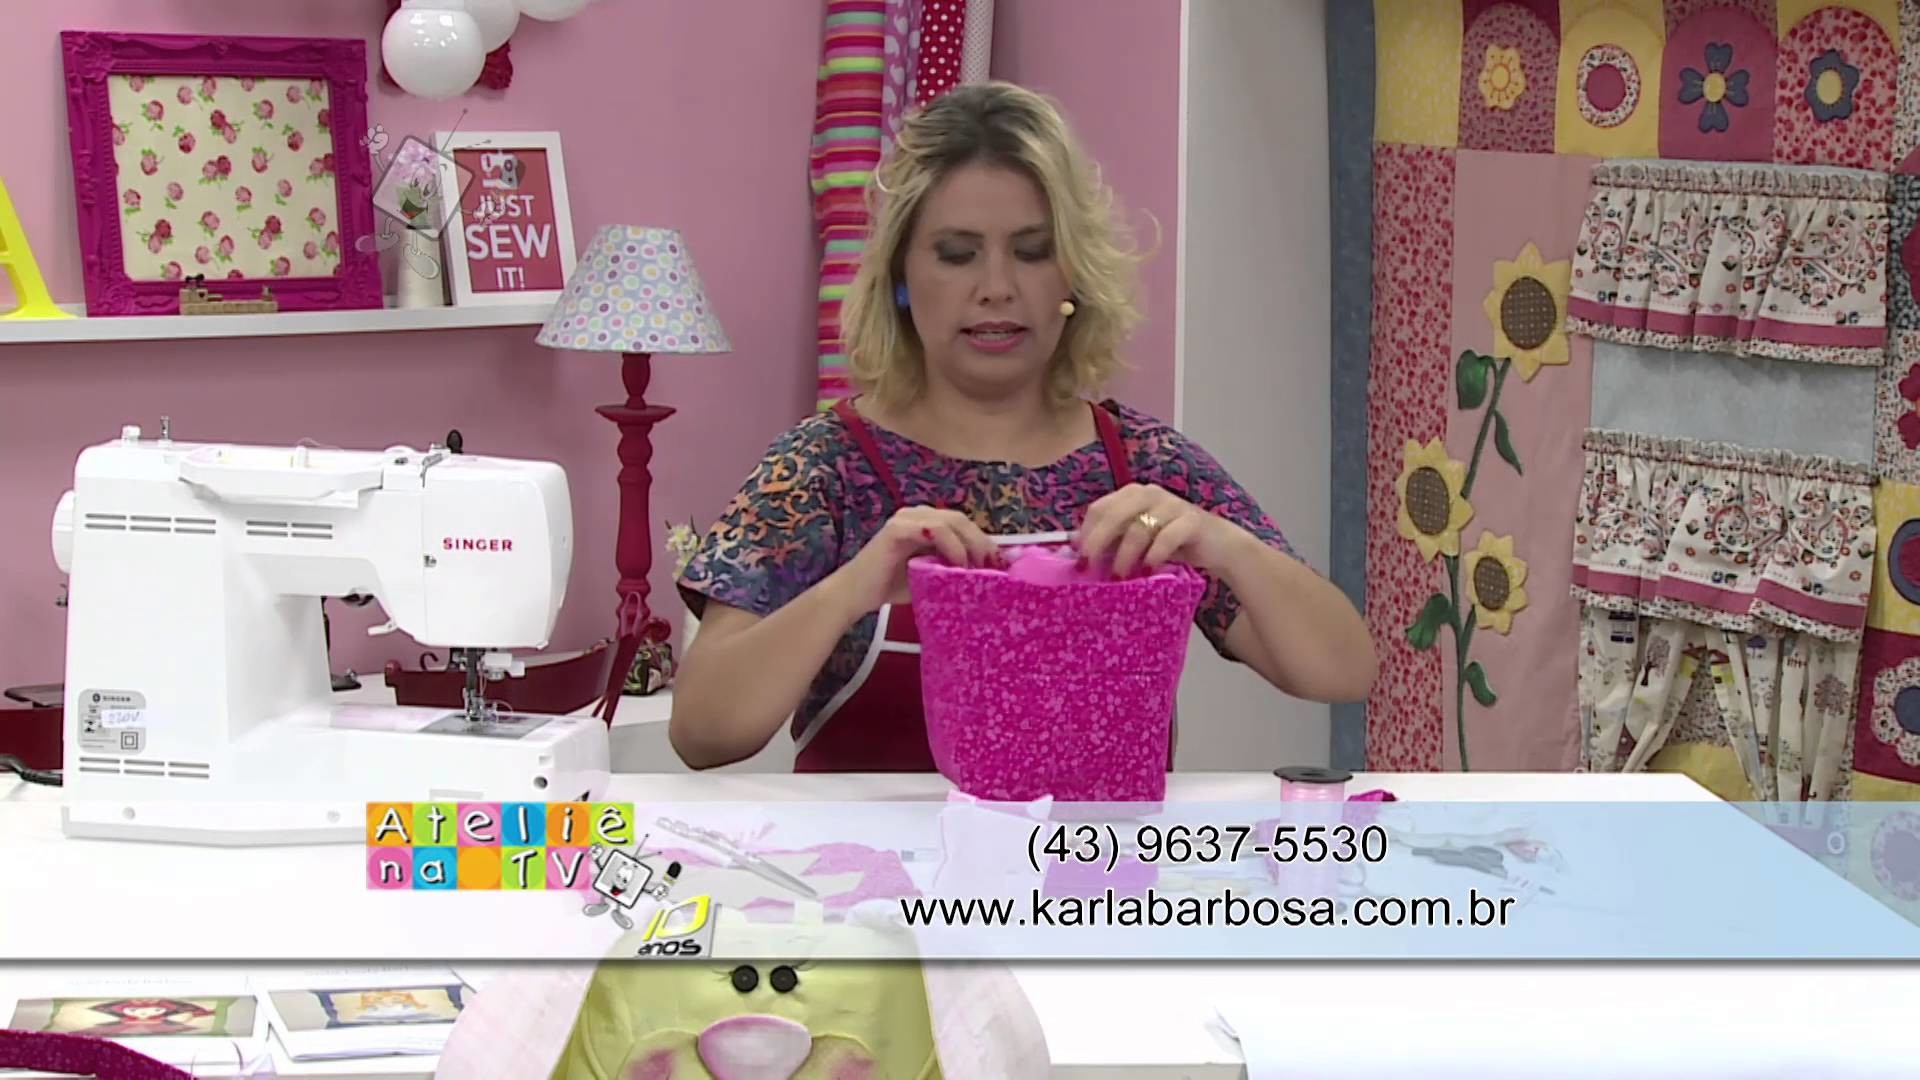 Ateliê na TV - Rede Brasil - 09.02.16 - Karla Barbosa e Catiane Gobbi